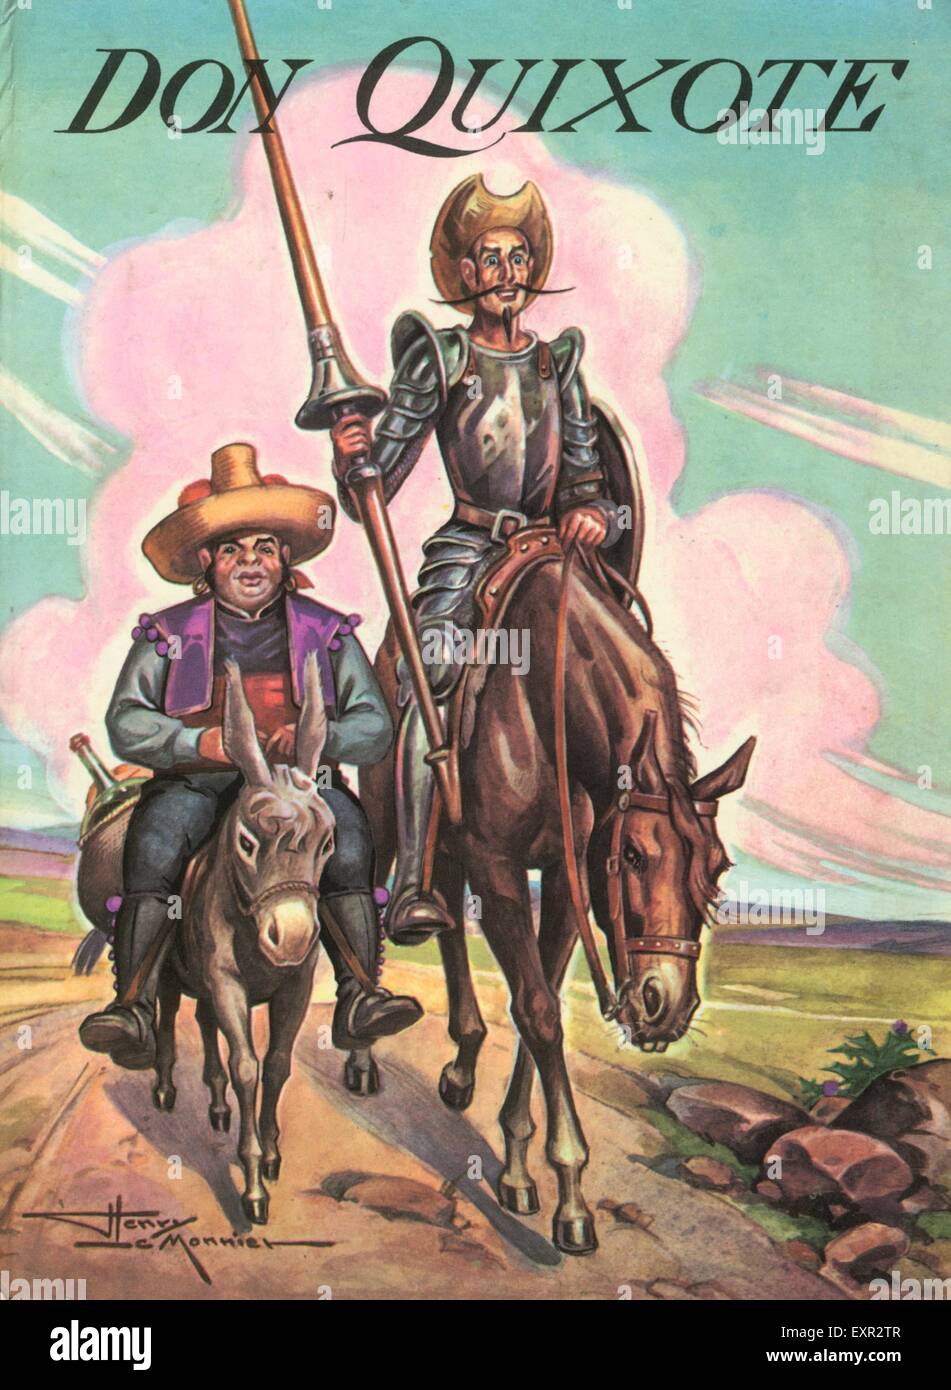 1970 UK Don Quijote Portada del libro. Foto de stock